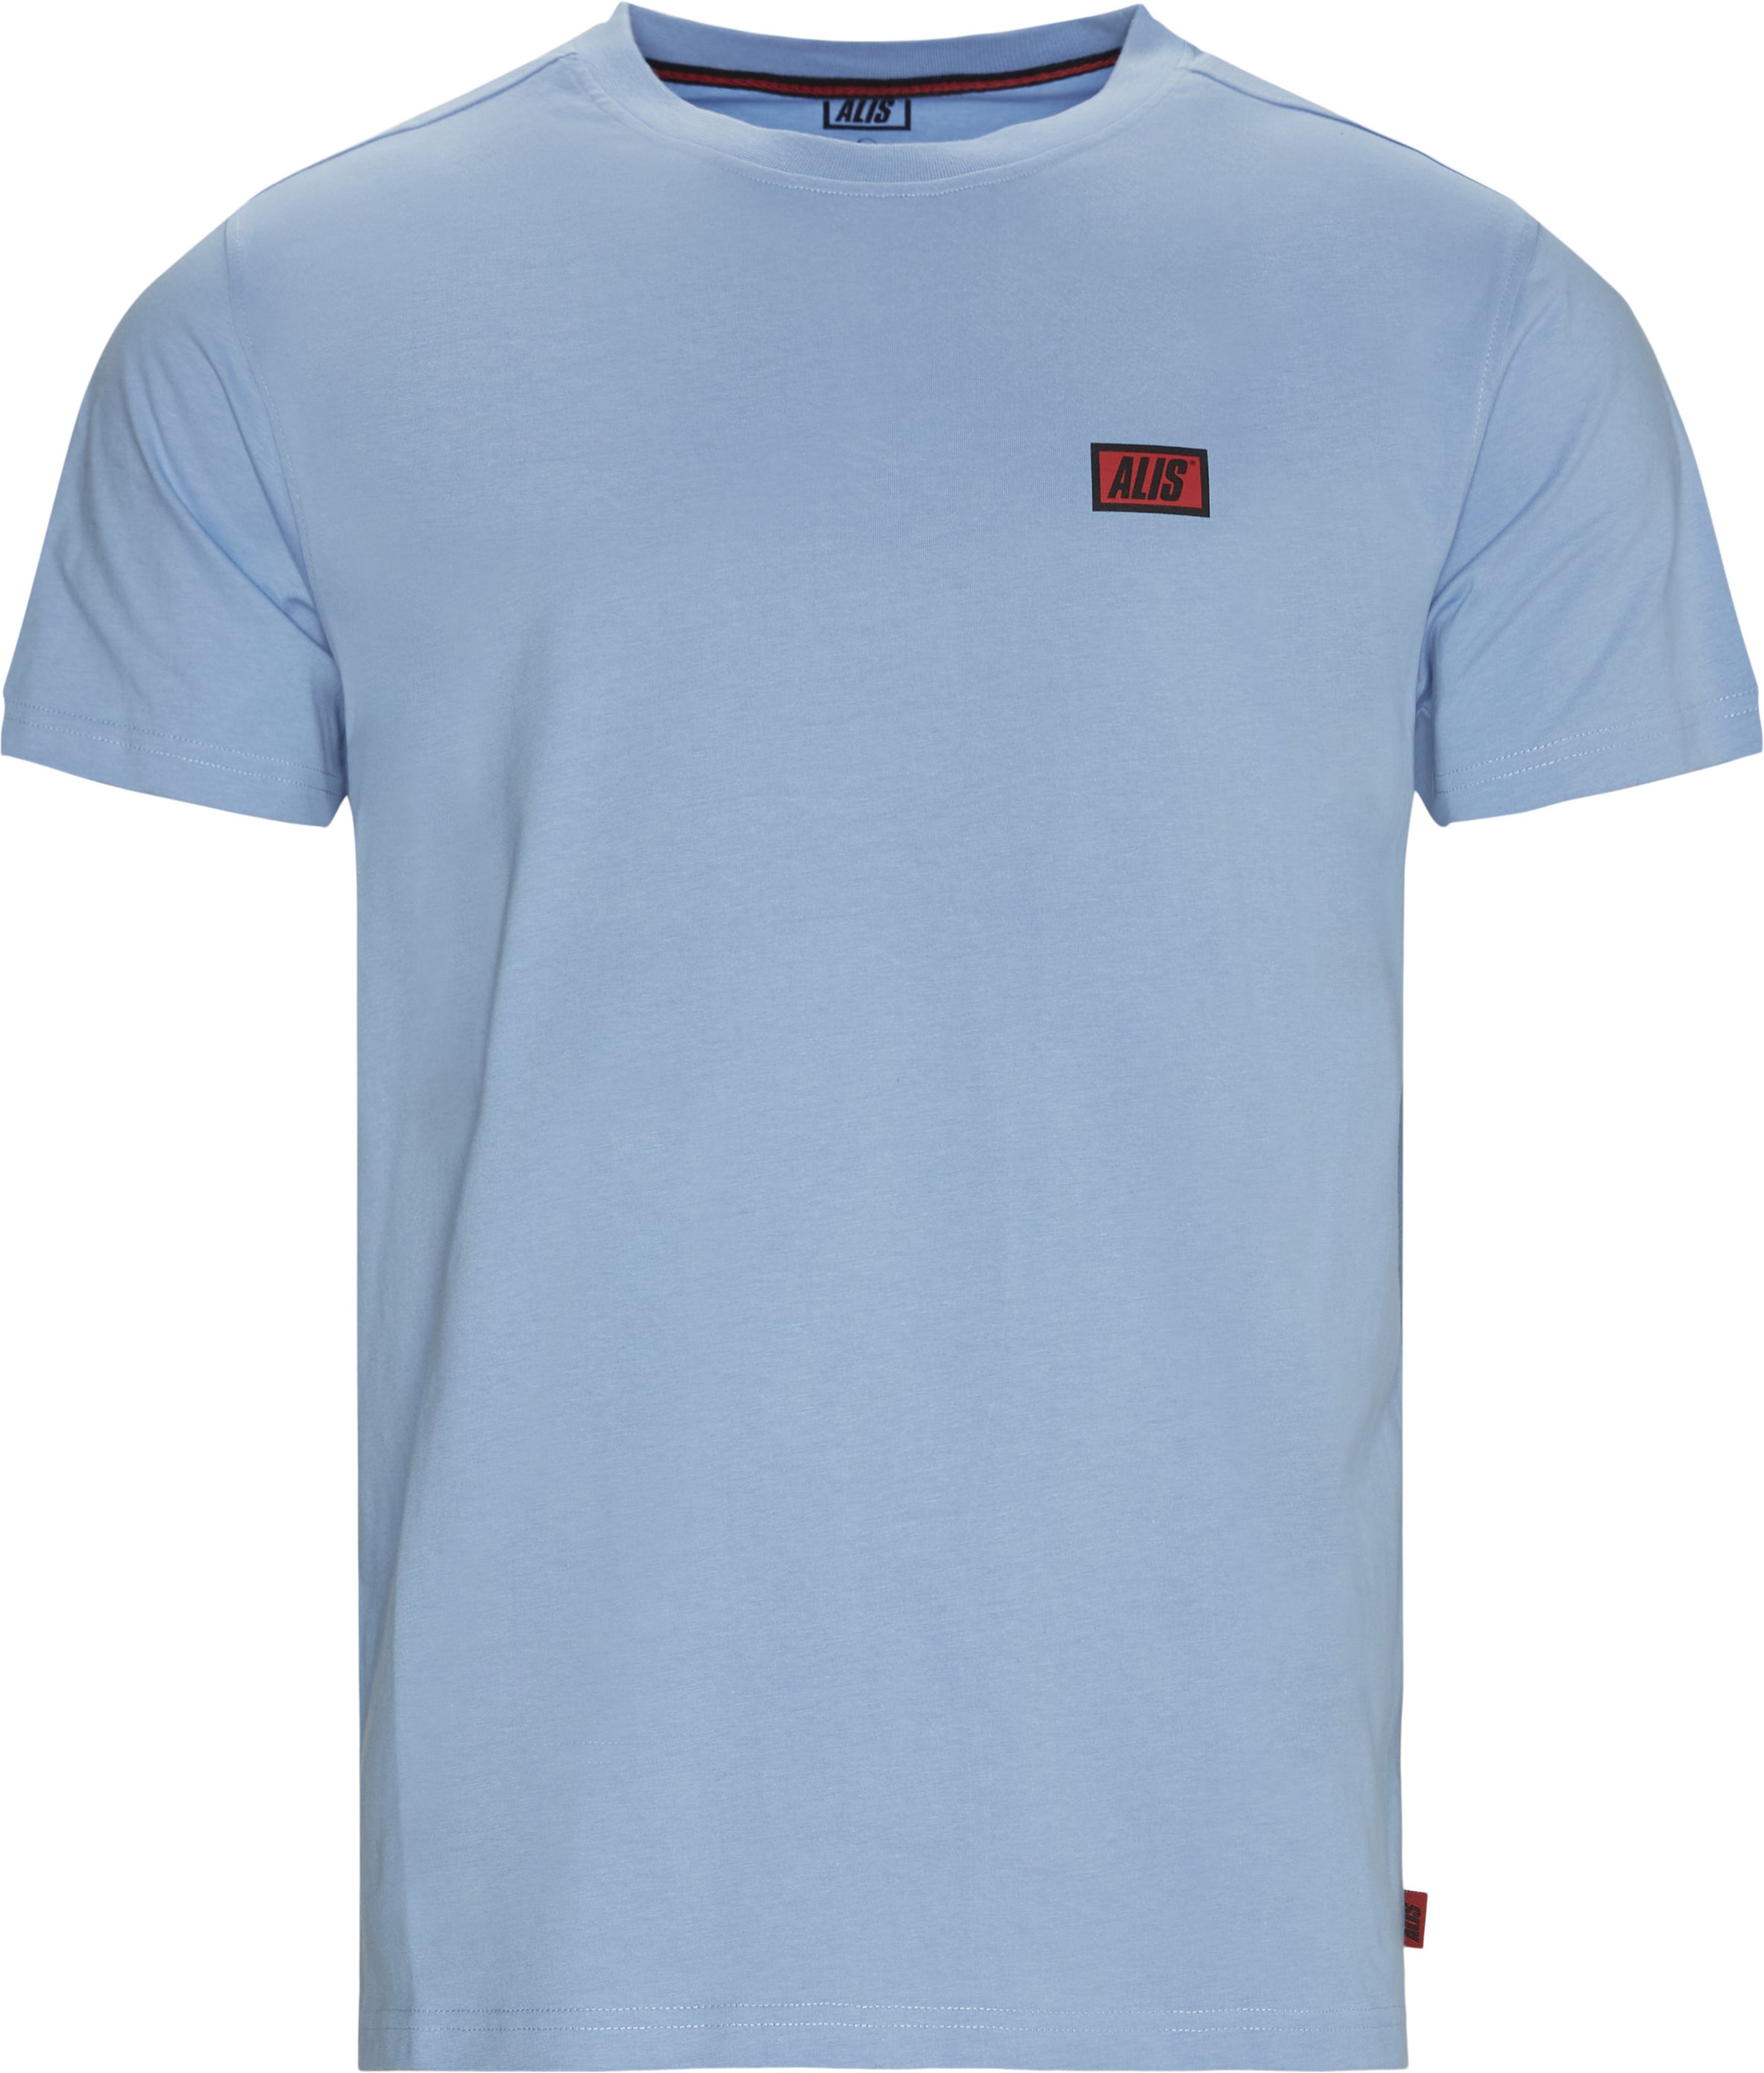 Am3001 Tee - T-shirts - Regular fit - Blå